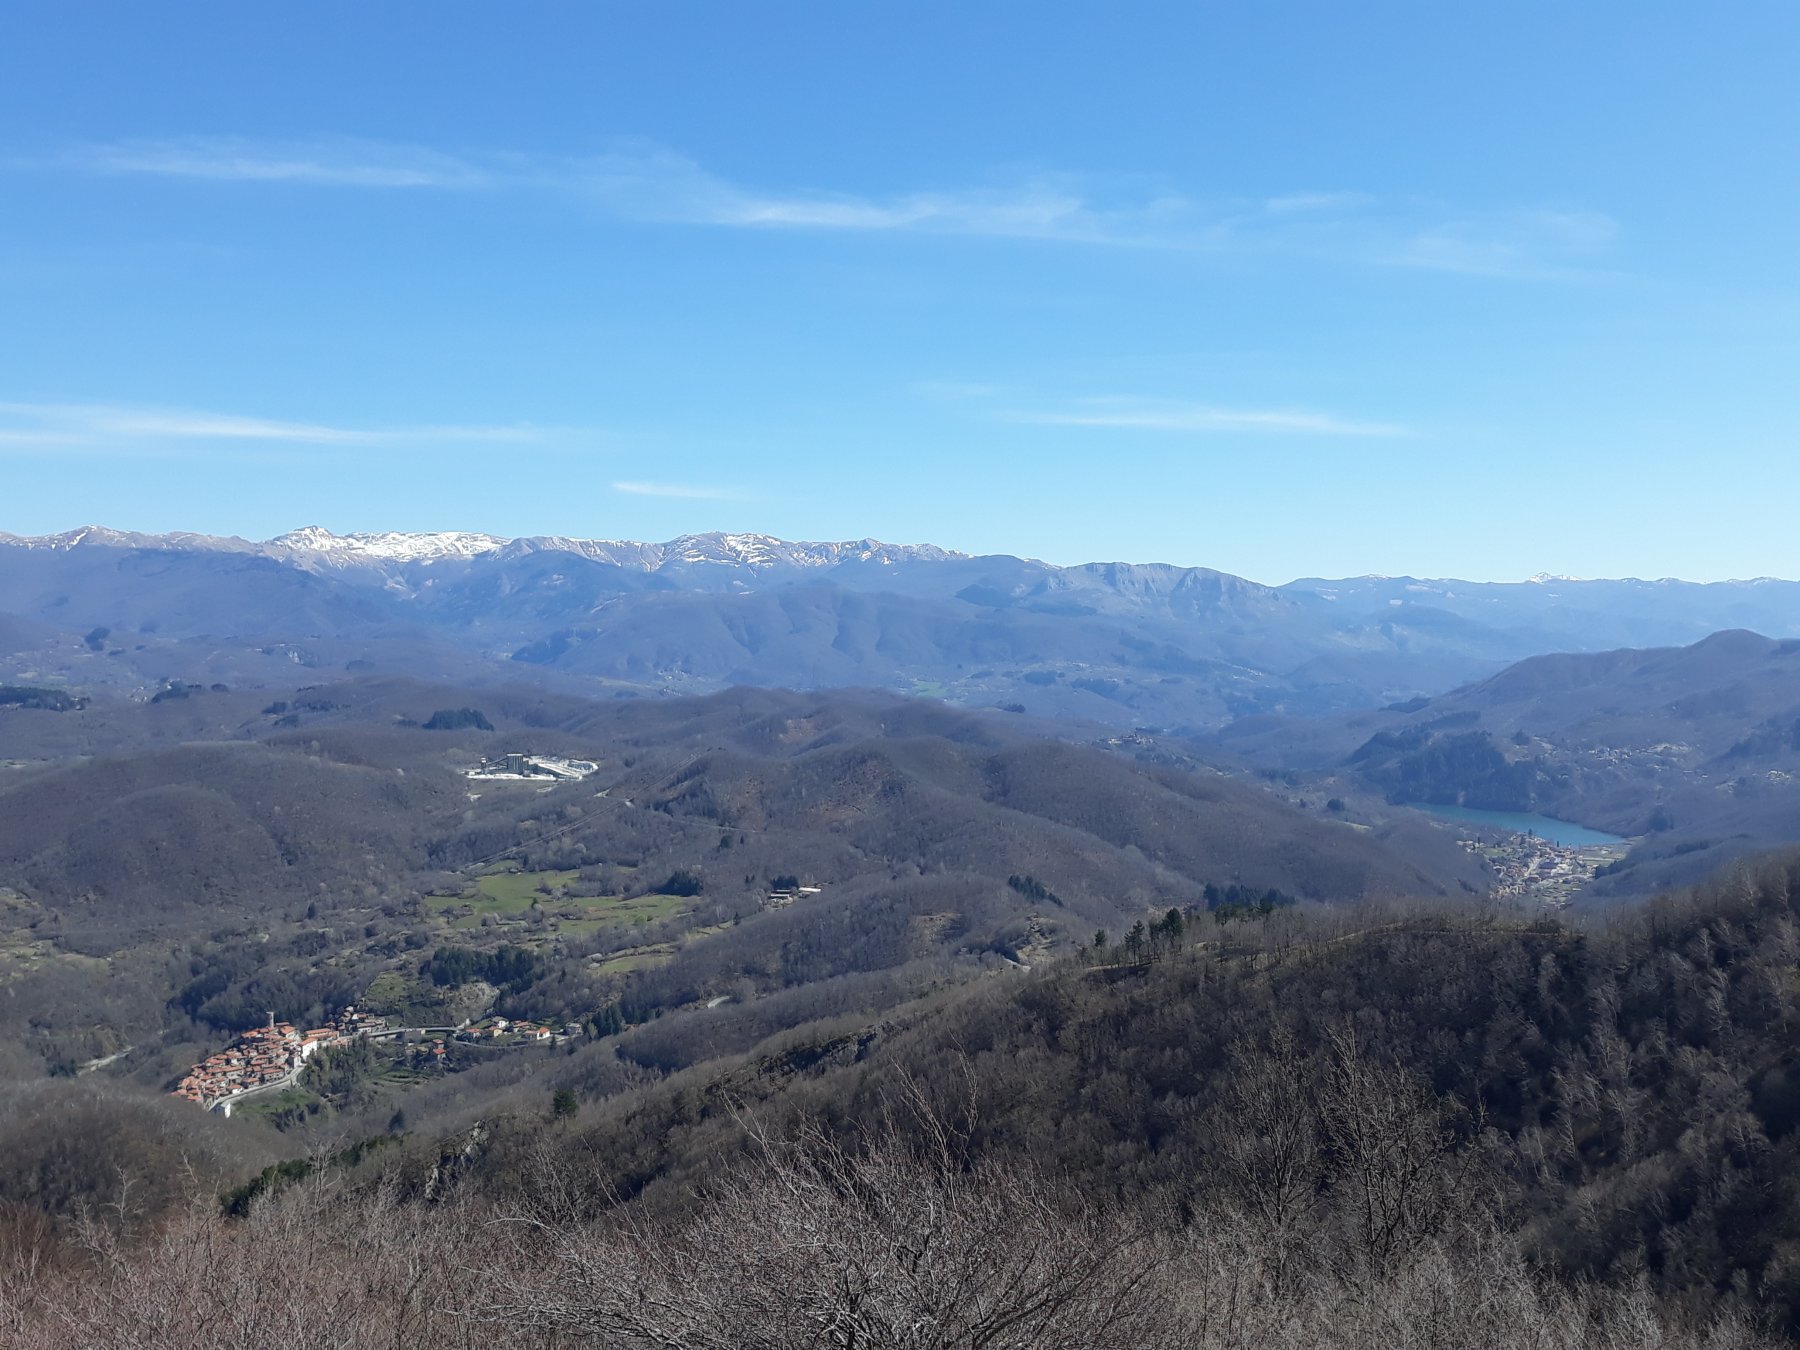 Salendo al Poggio Baldozzana, panorama verso Minucciano, Gramolazzo e le cime dell'Appennino tosco-emiliano